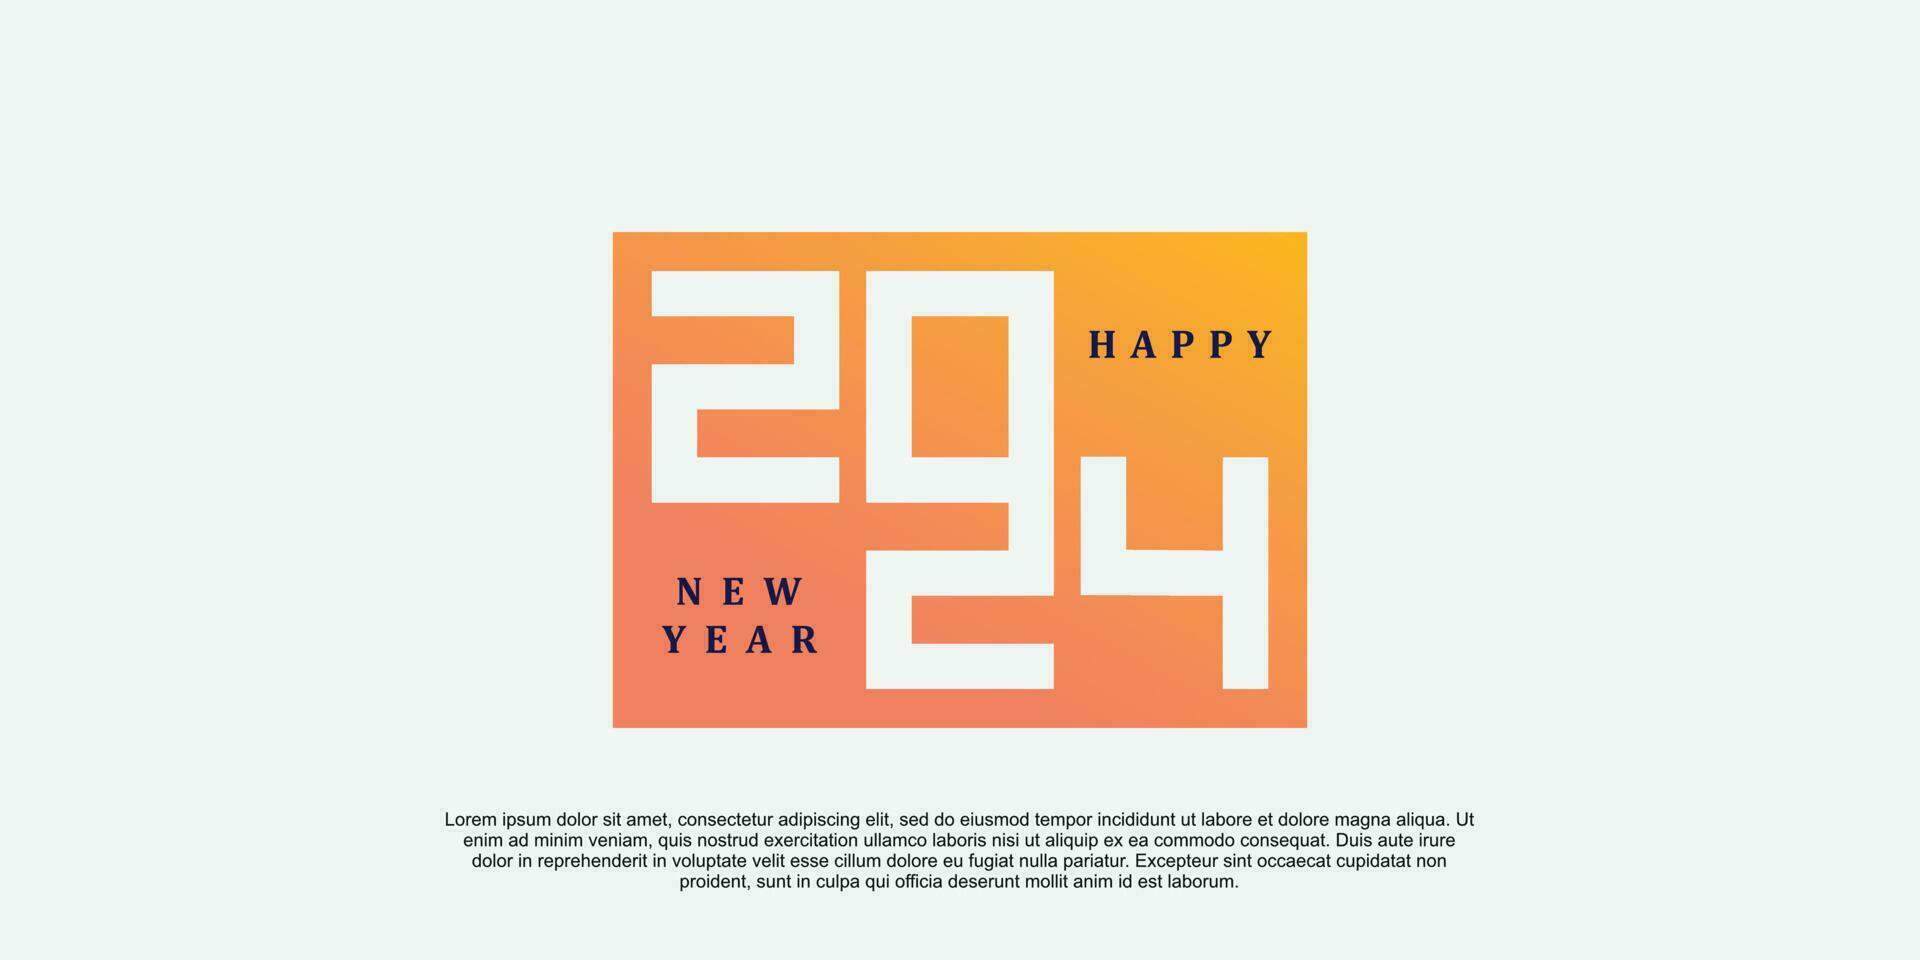 2024 contento nuovo anno logo design 2024 numero vettore illustrazione